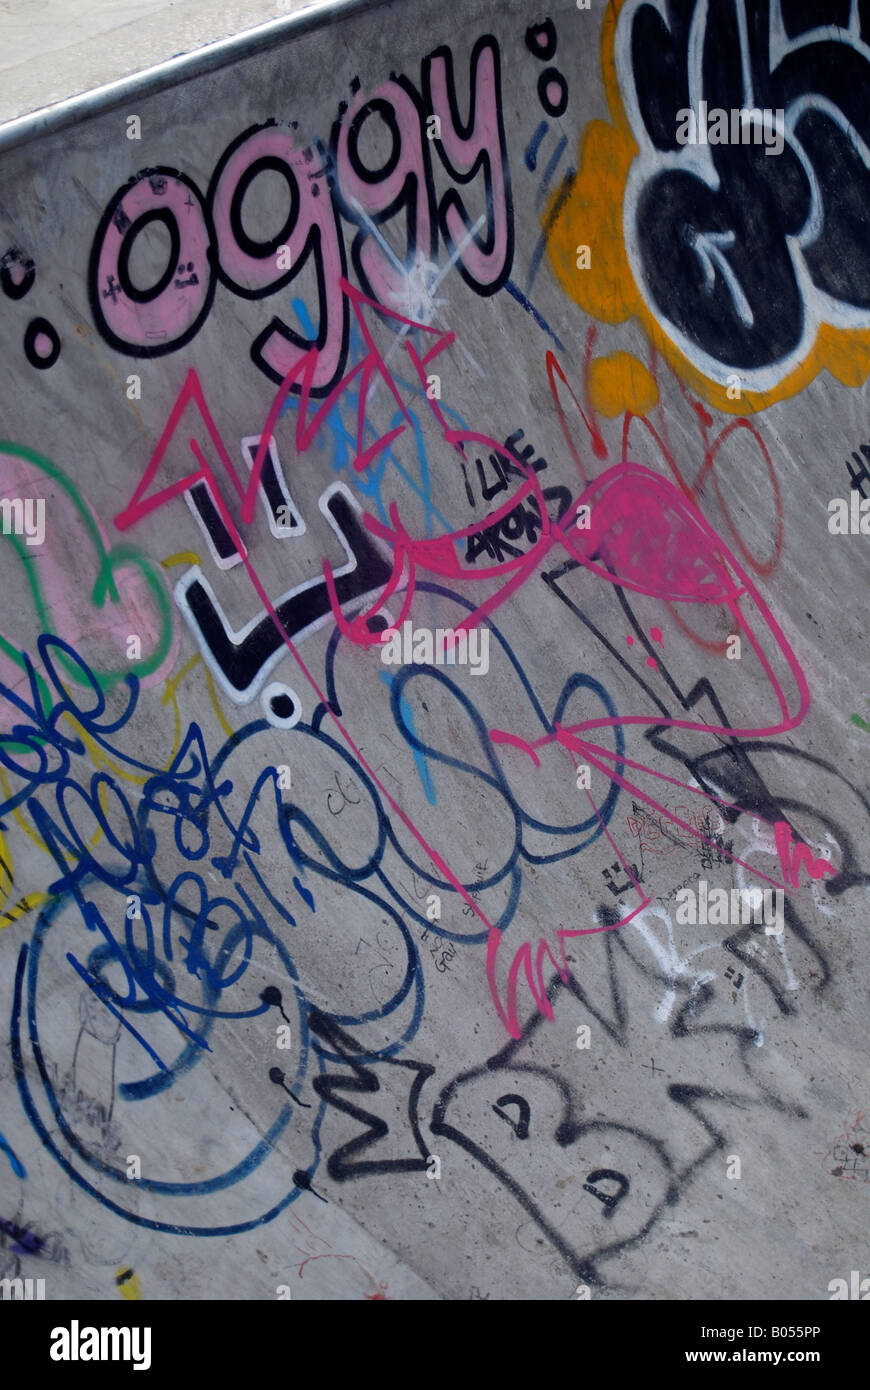 La ribellione di Graffiti Skateboard skatepark tags tagging arte spraycan adolescenti pattinatori urbana Foto Stock